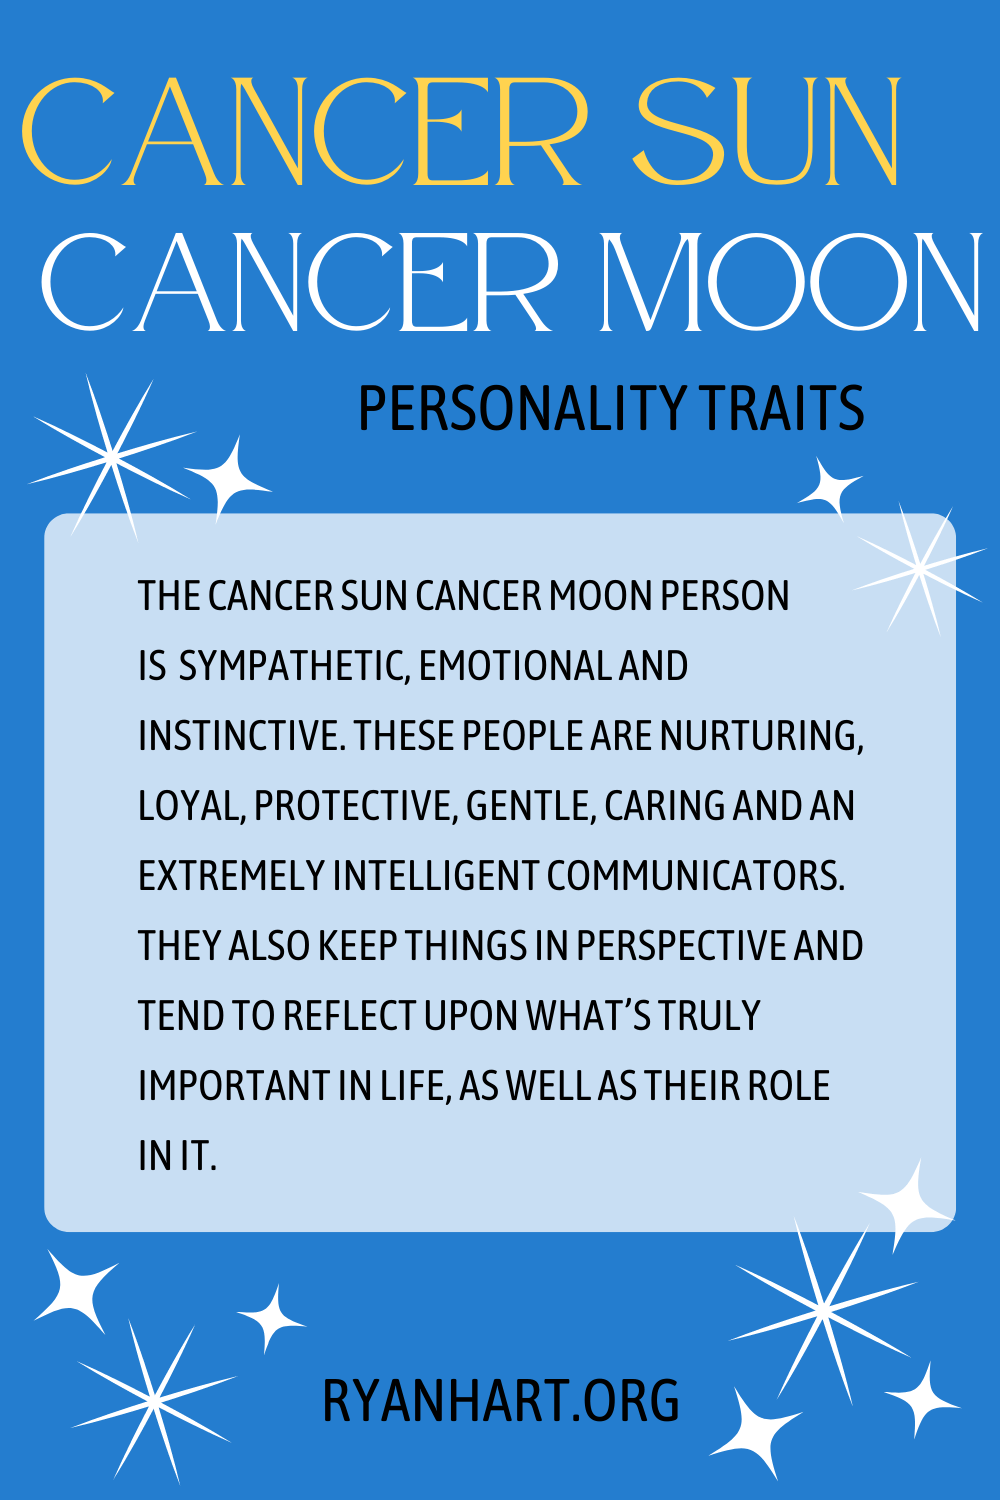 Cancer Sun Cancer Moon Description